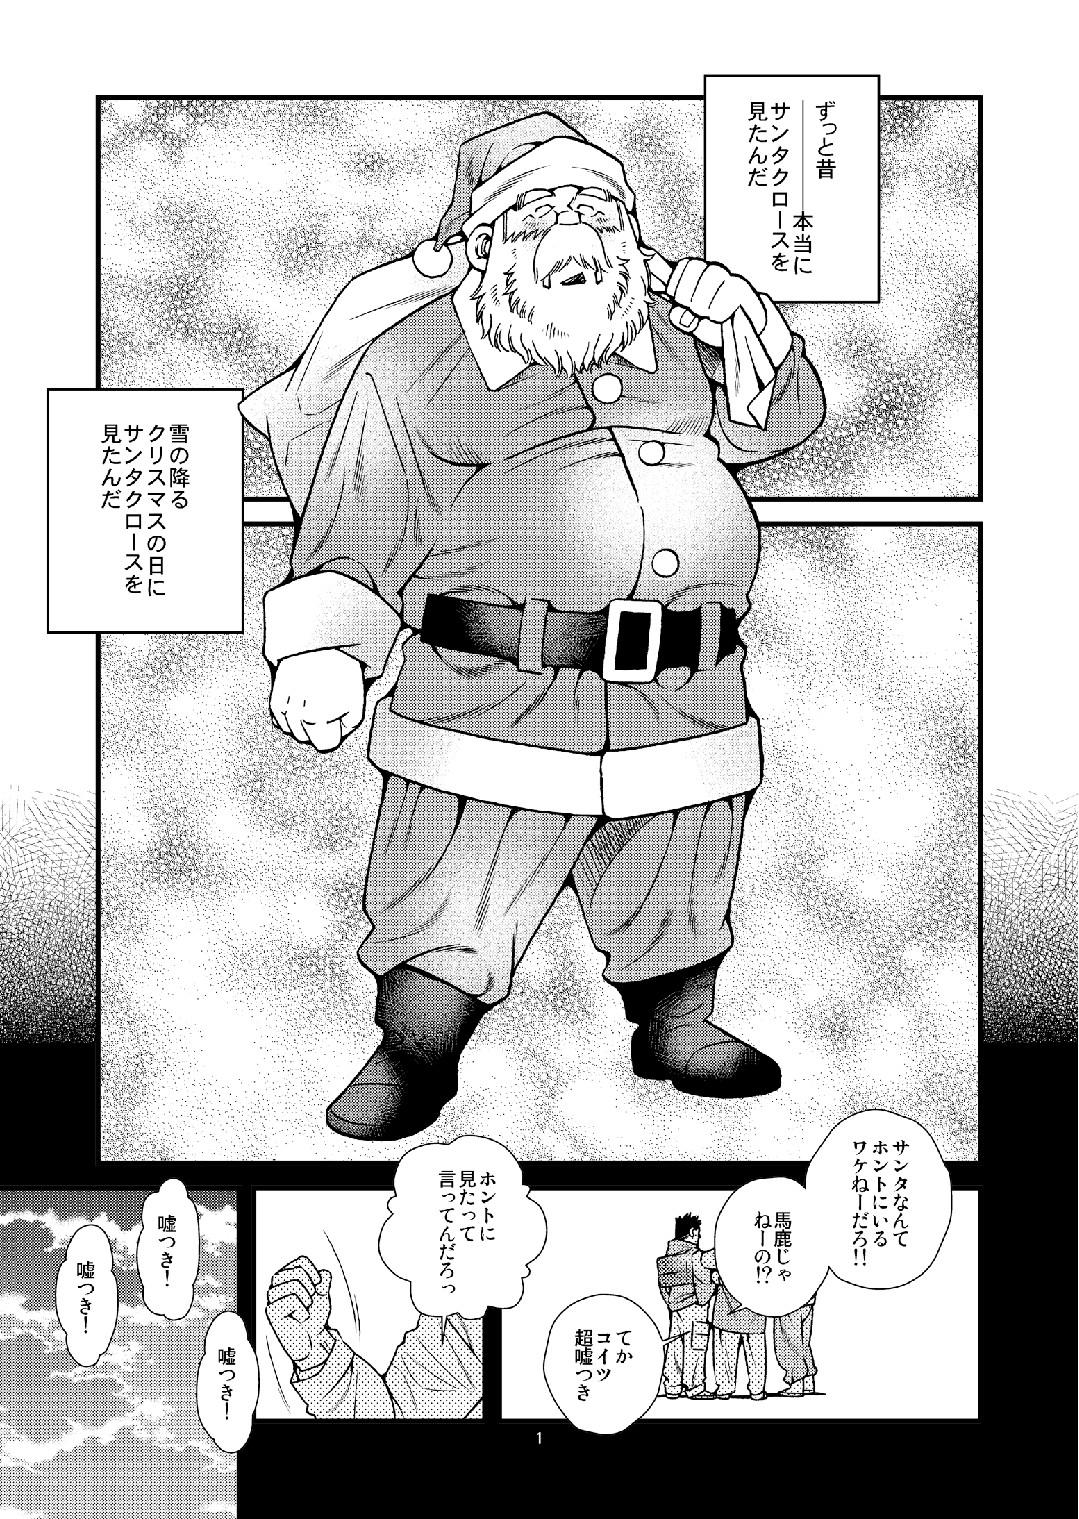 Manatsu ni Santa ga Yattekita - Santa Claus in Summer 1